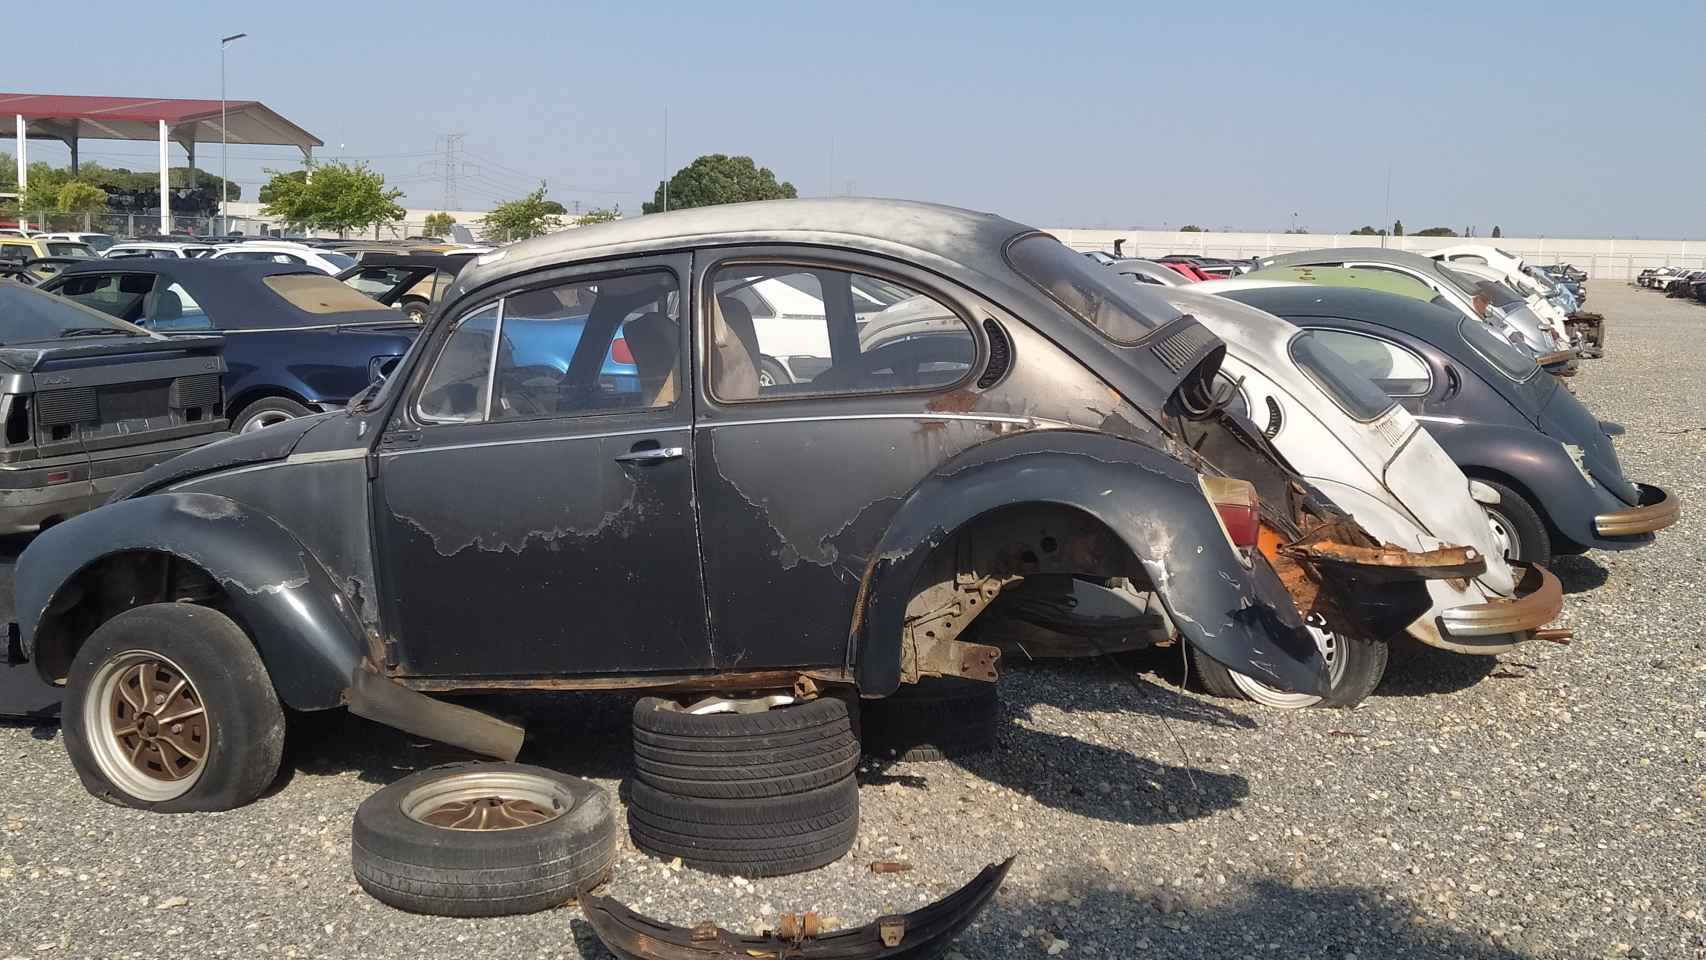 Un curioso Volkswagen Beetle dentro de la campa del desguace.